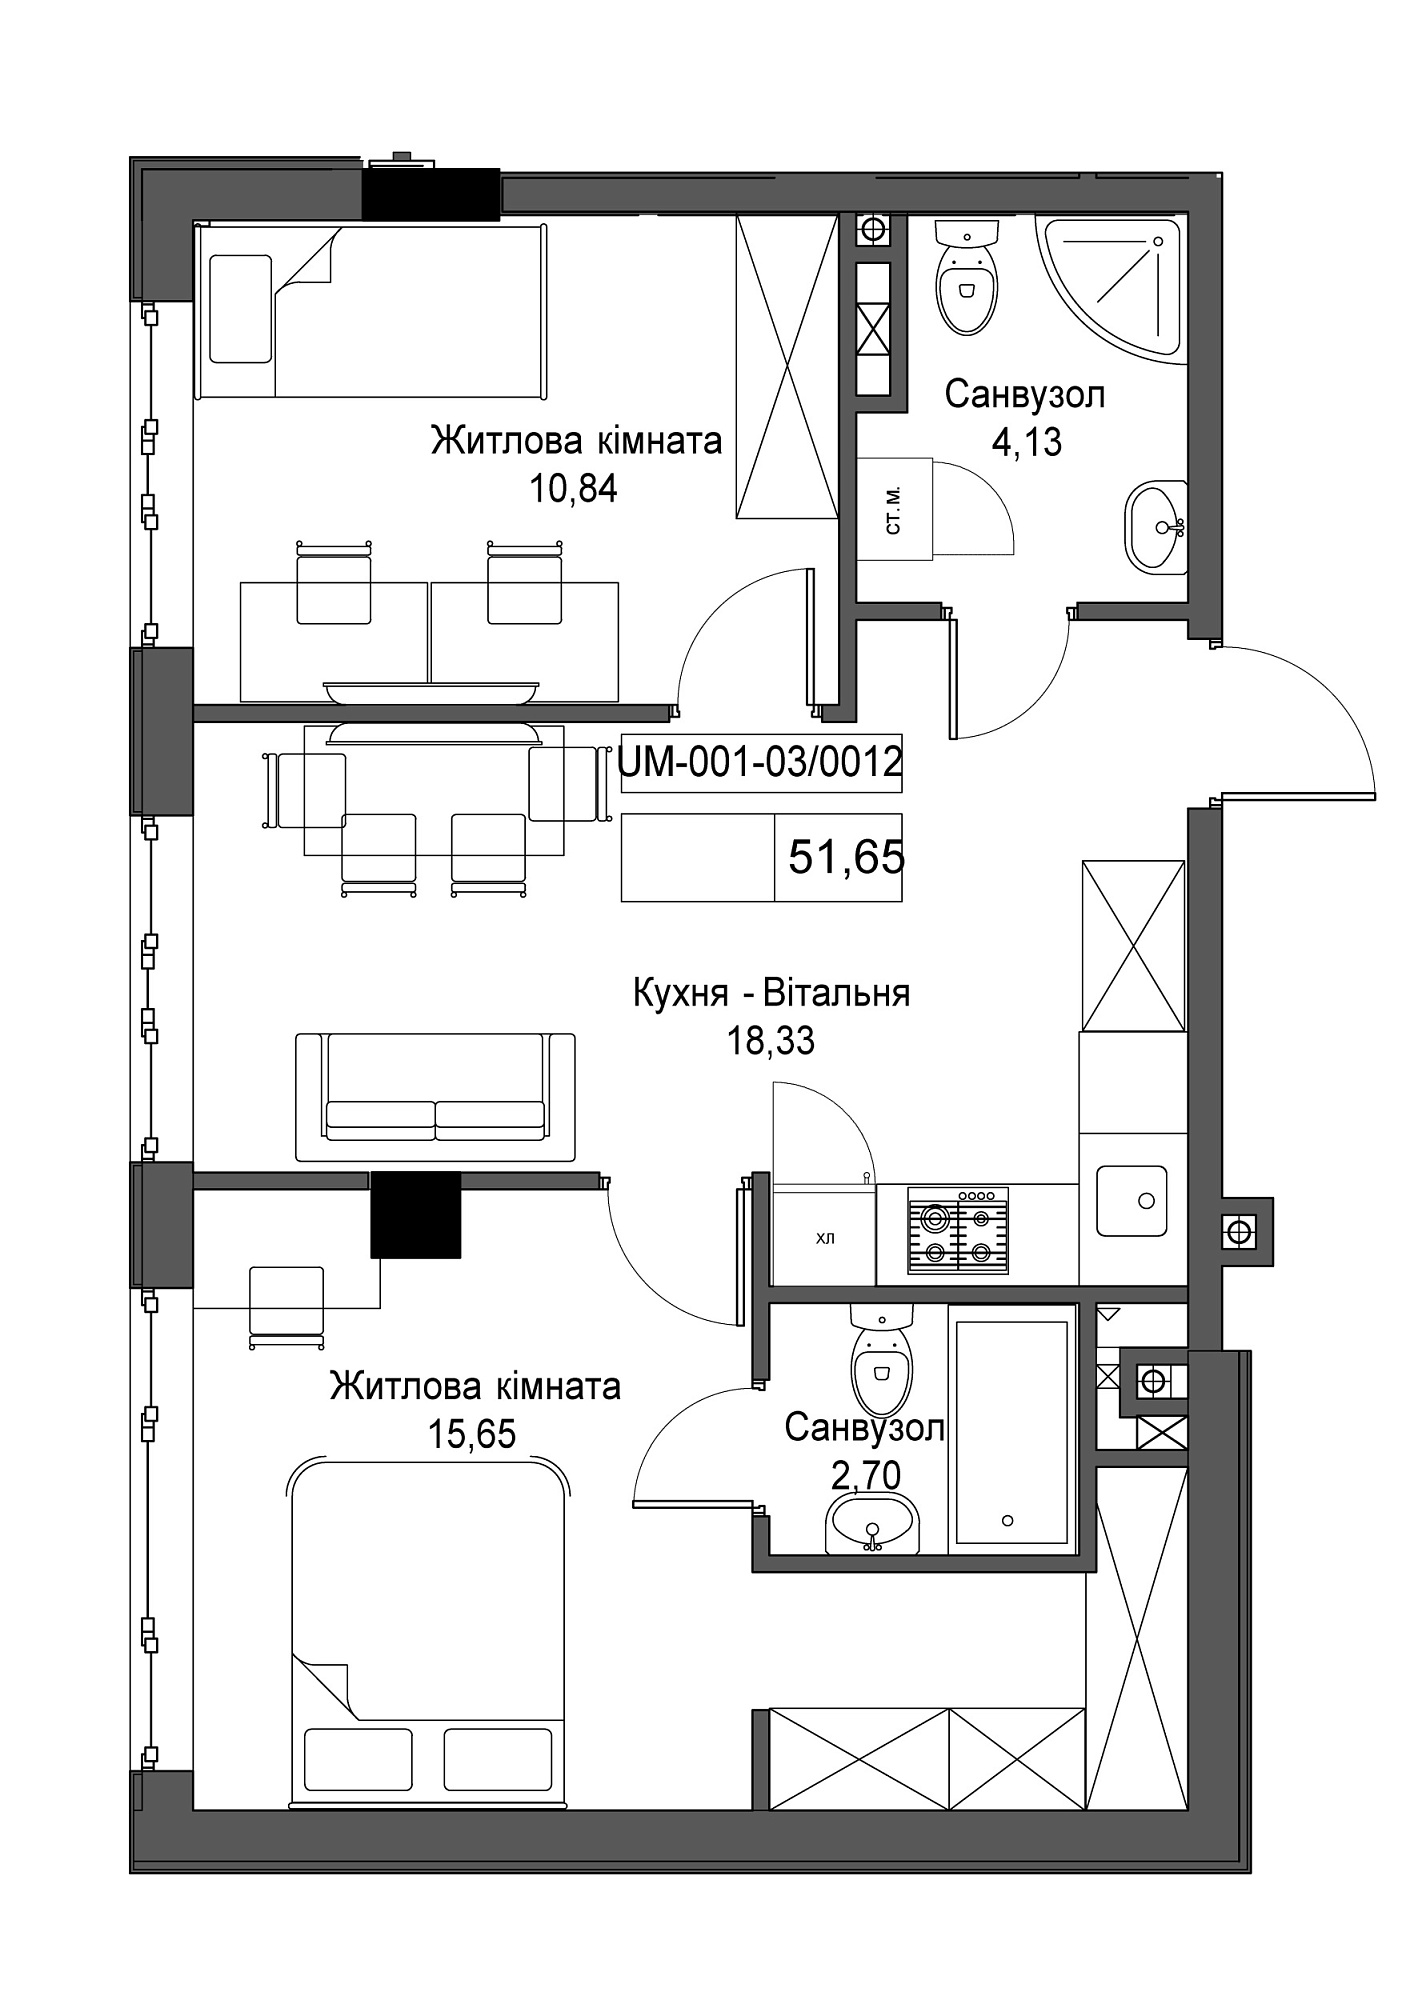 Планировка 2-к квартира площей 51.65м2, UM-001-03/0012.